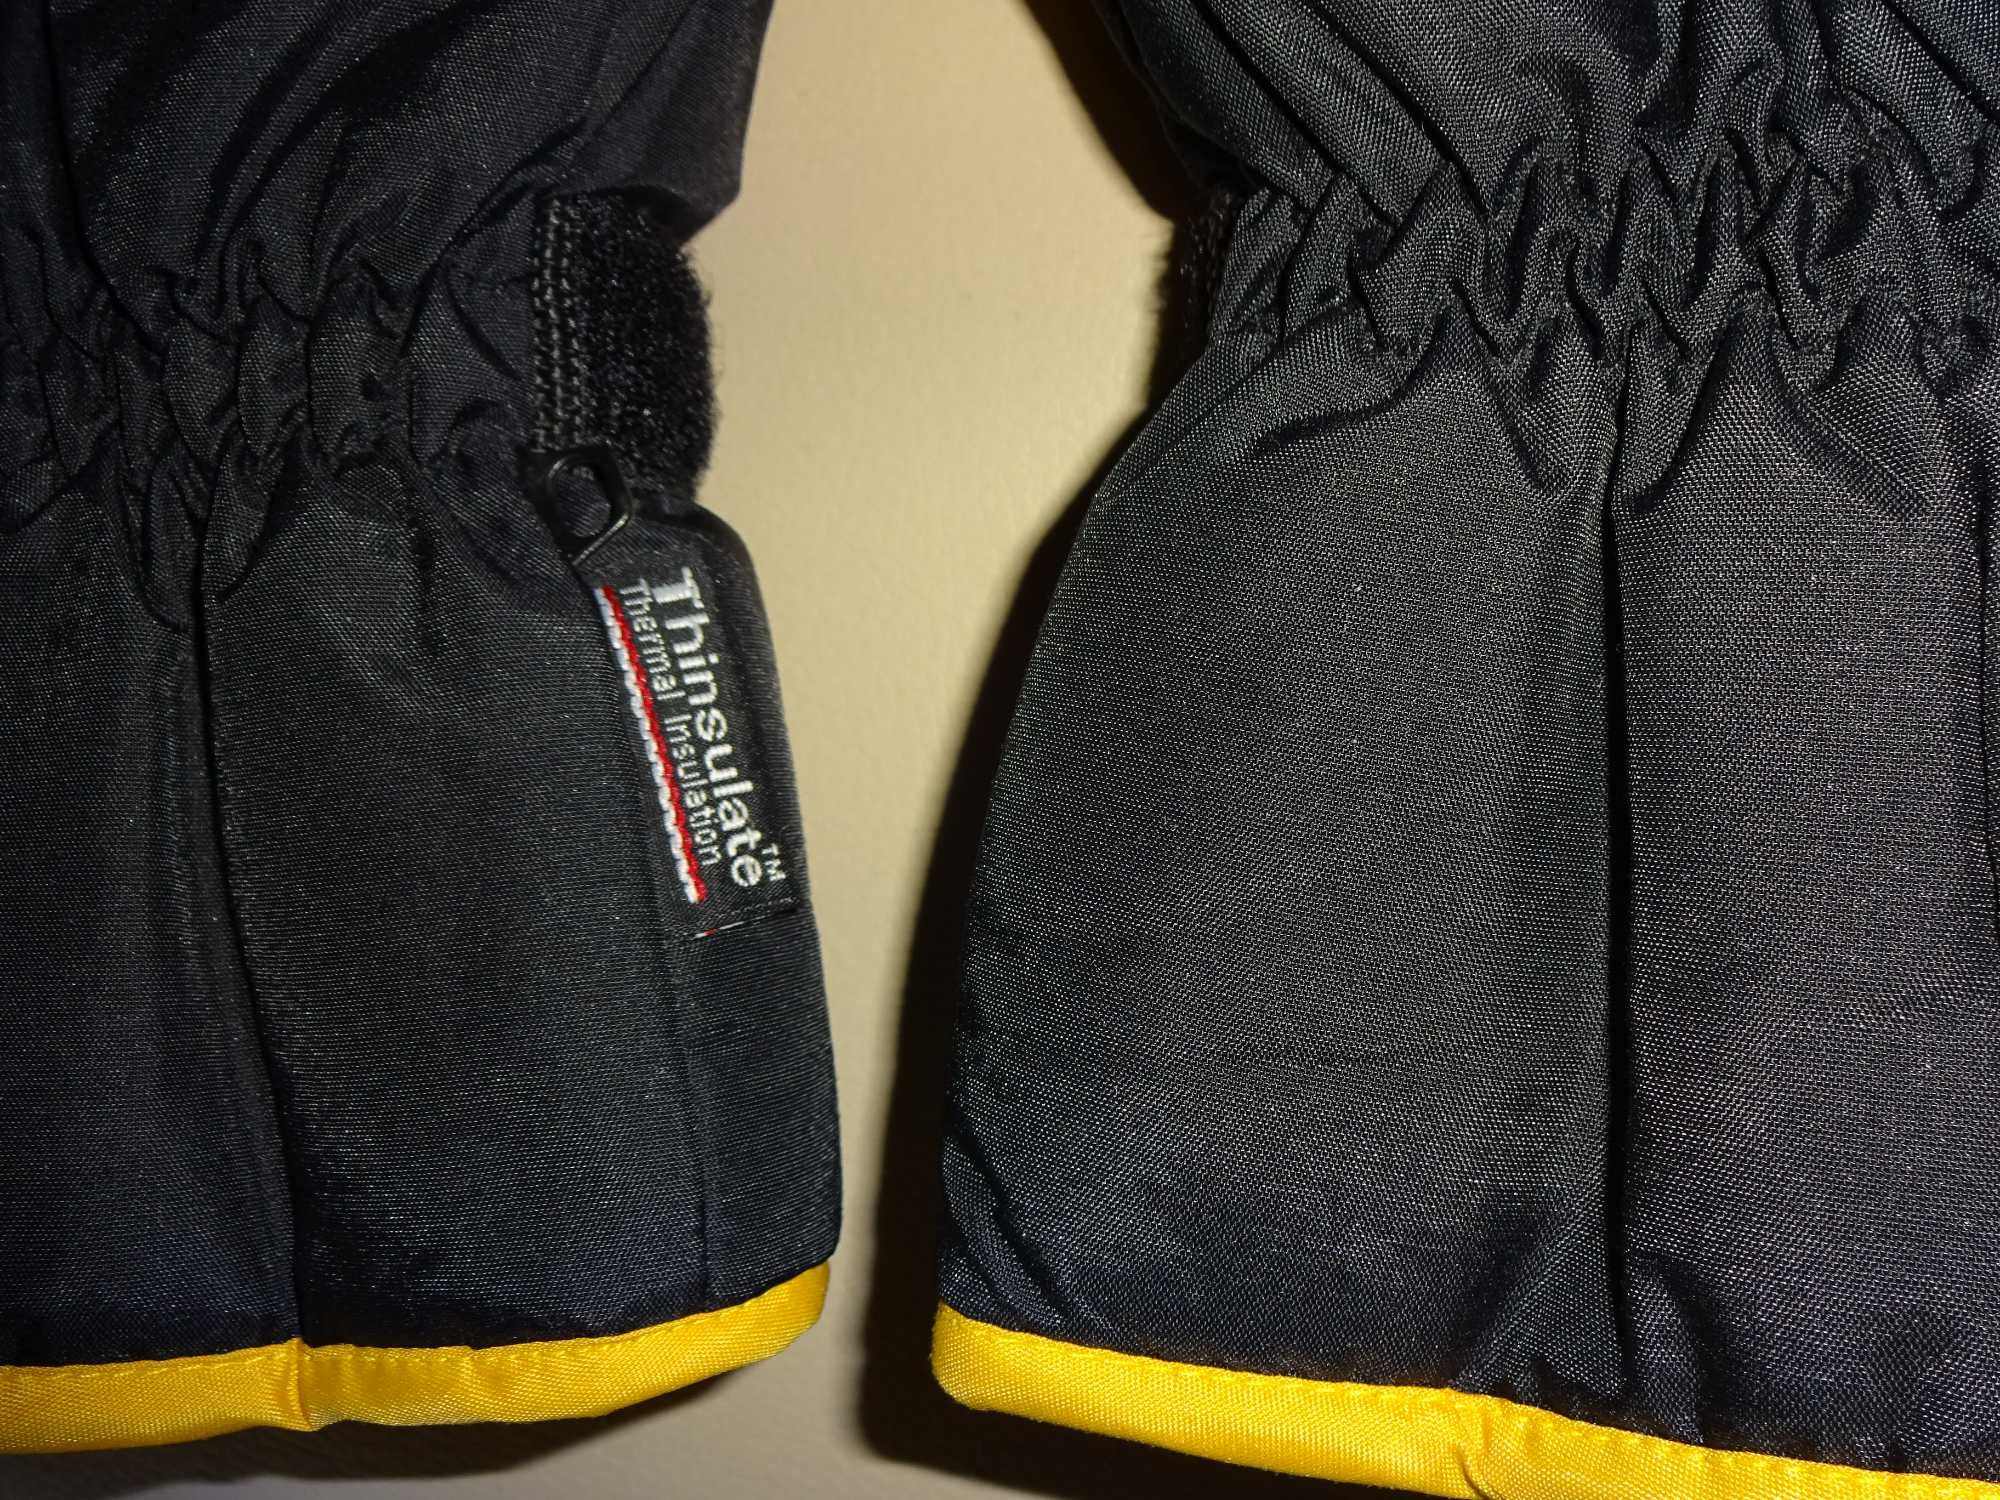 SupraTherm Thinsulate ciepłe żółte czarne rękawice narciarskie 9,5